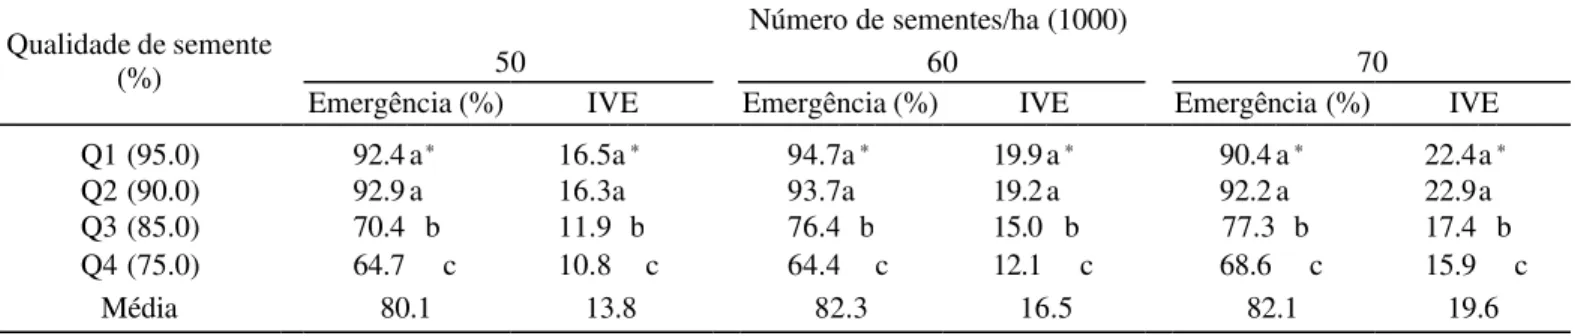 TABELA 3. Relação entre a qualidade da semente e a densidade de semeadura na emergência de plântulas em campo e o índice de velocidade de emergência em milho BRS 201, Sete Lagoas, MG, 1997/98.